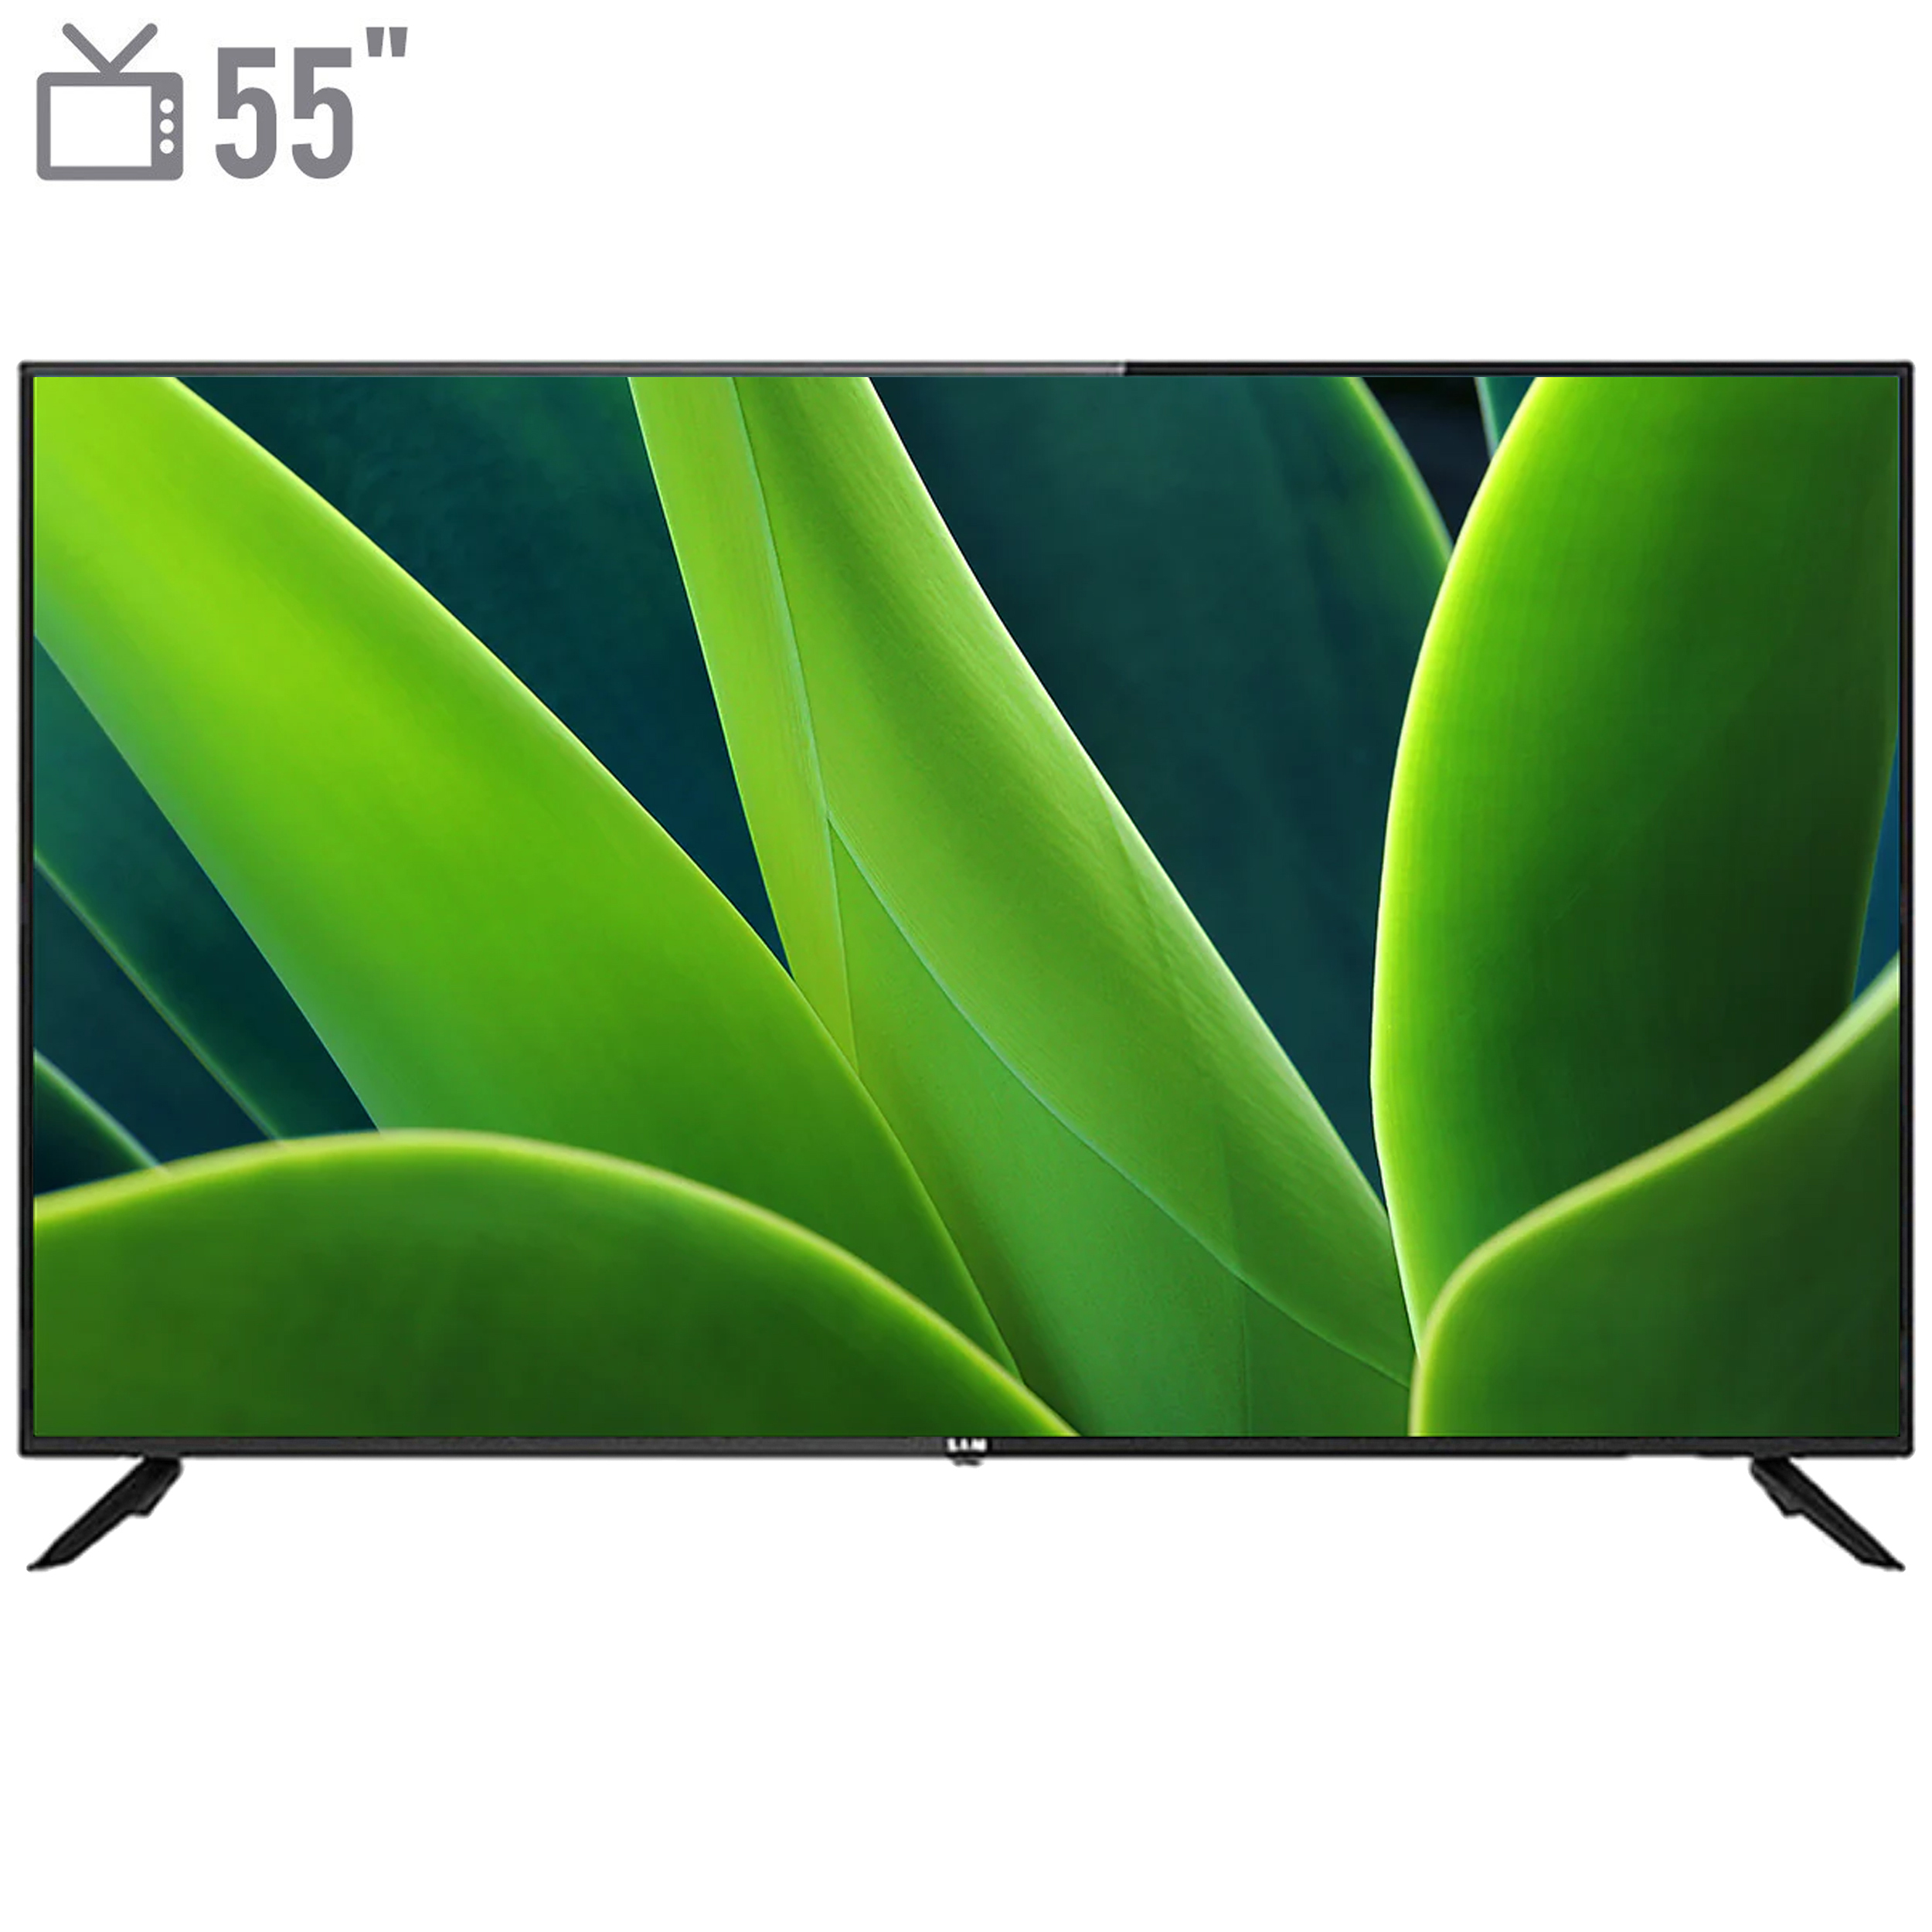 نکته خرید - قیمت روز تلویزیون هوشمند ال ای دی سام مدل UA55TU7500TH سایز 55 اینچ خرید